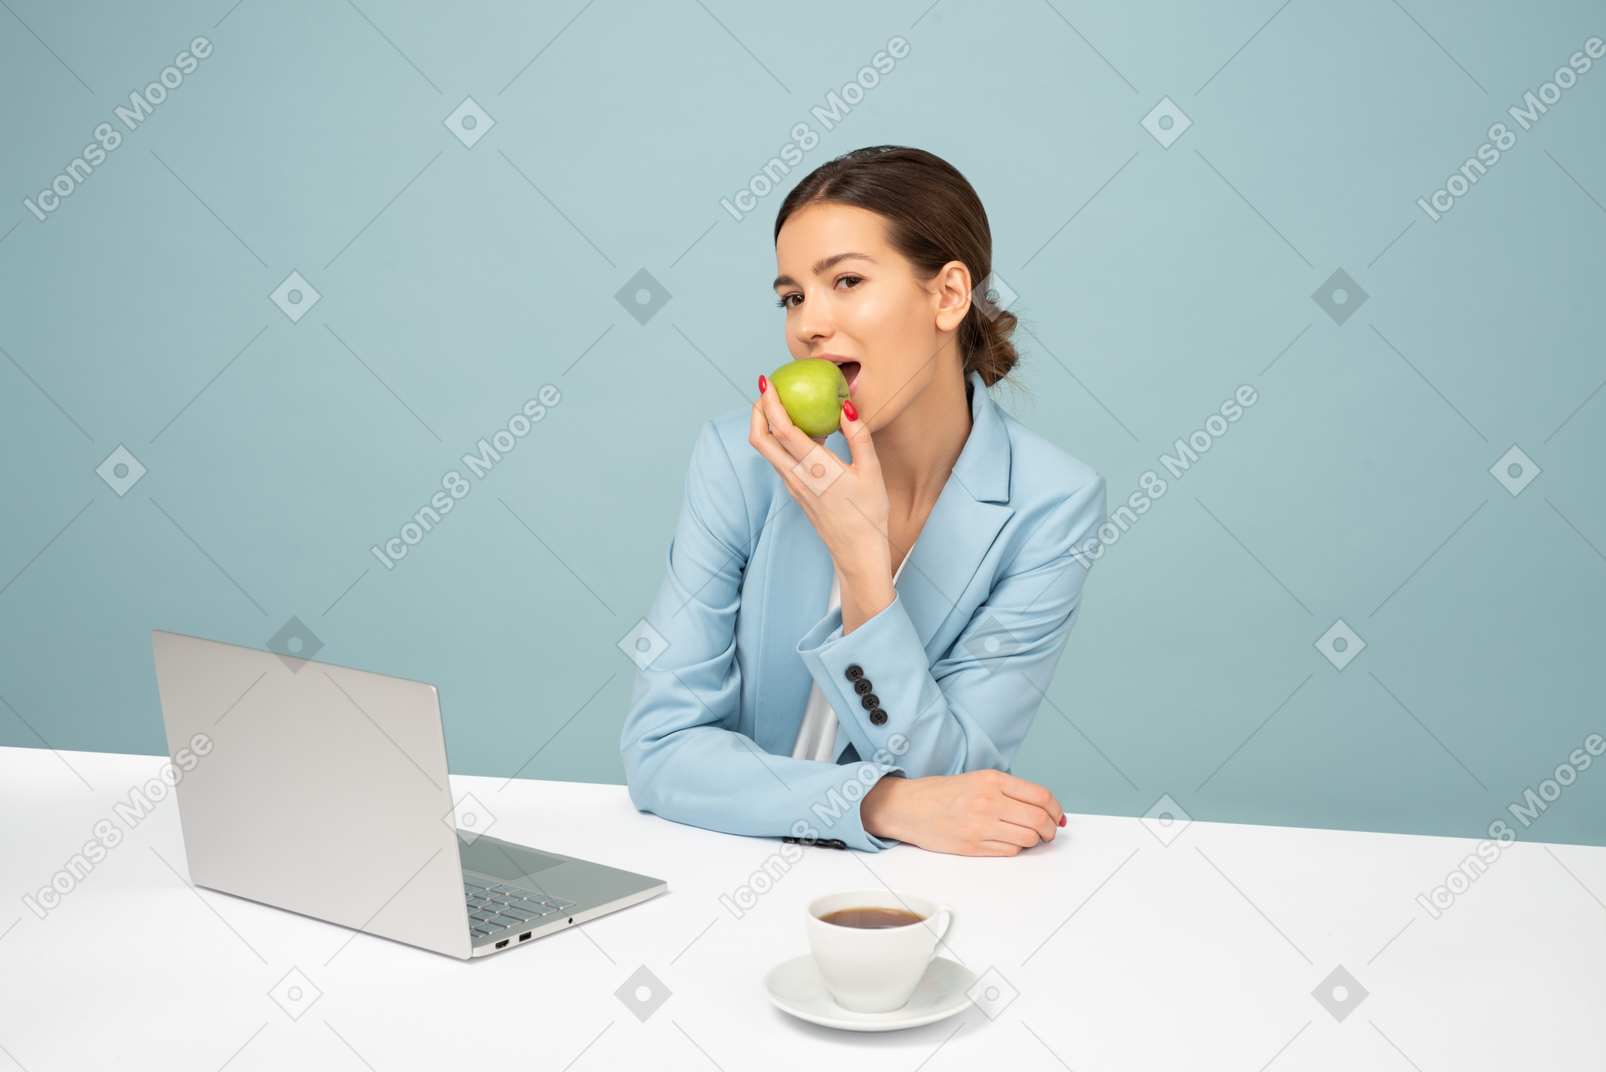 Empleado atractivo sentado en la mesa y comiendo una manzana.